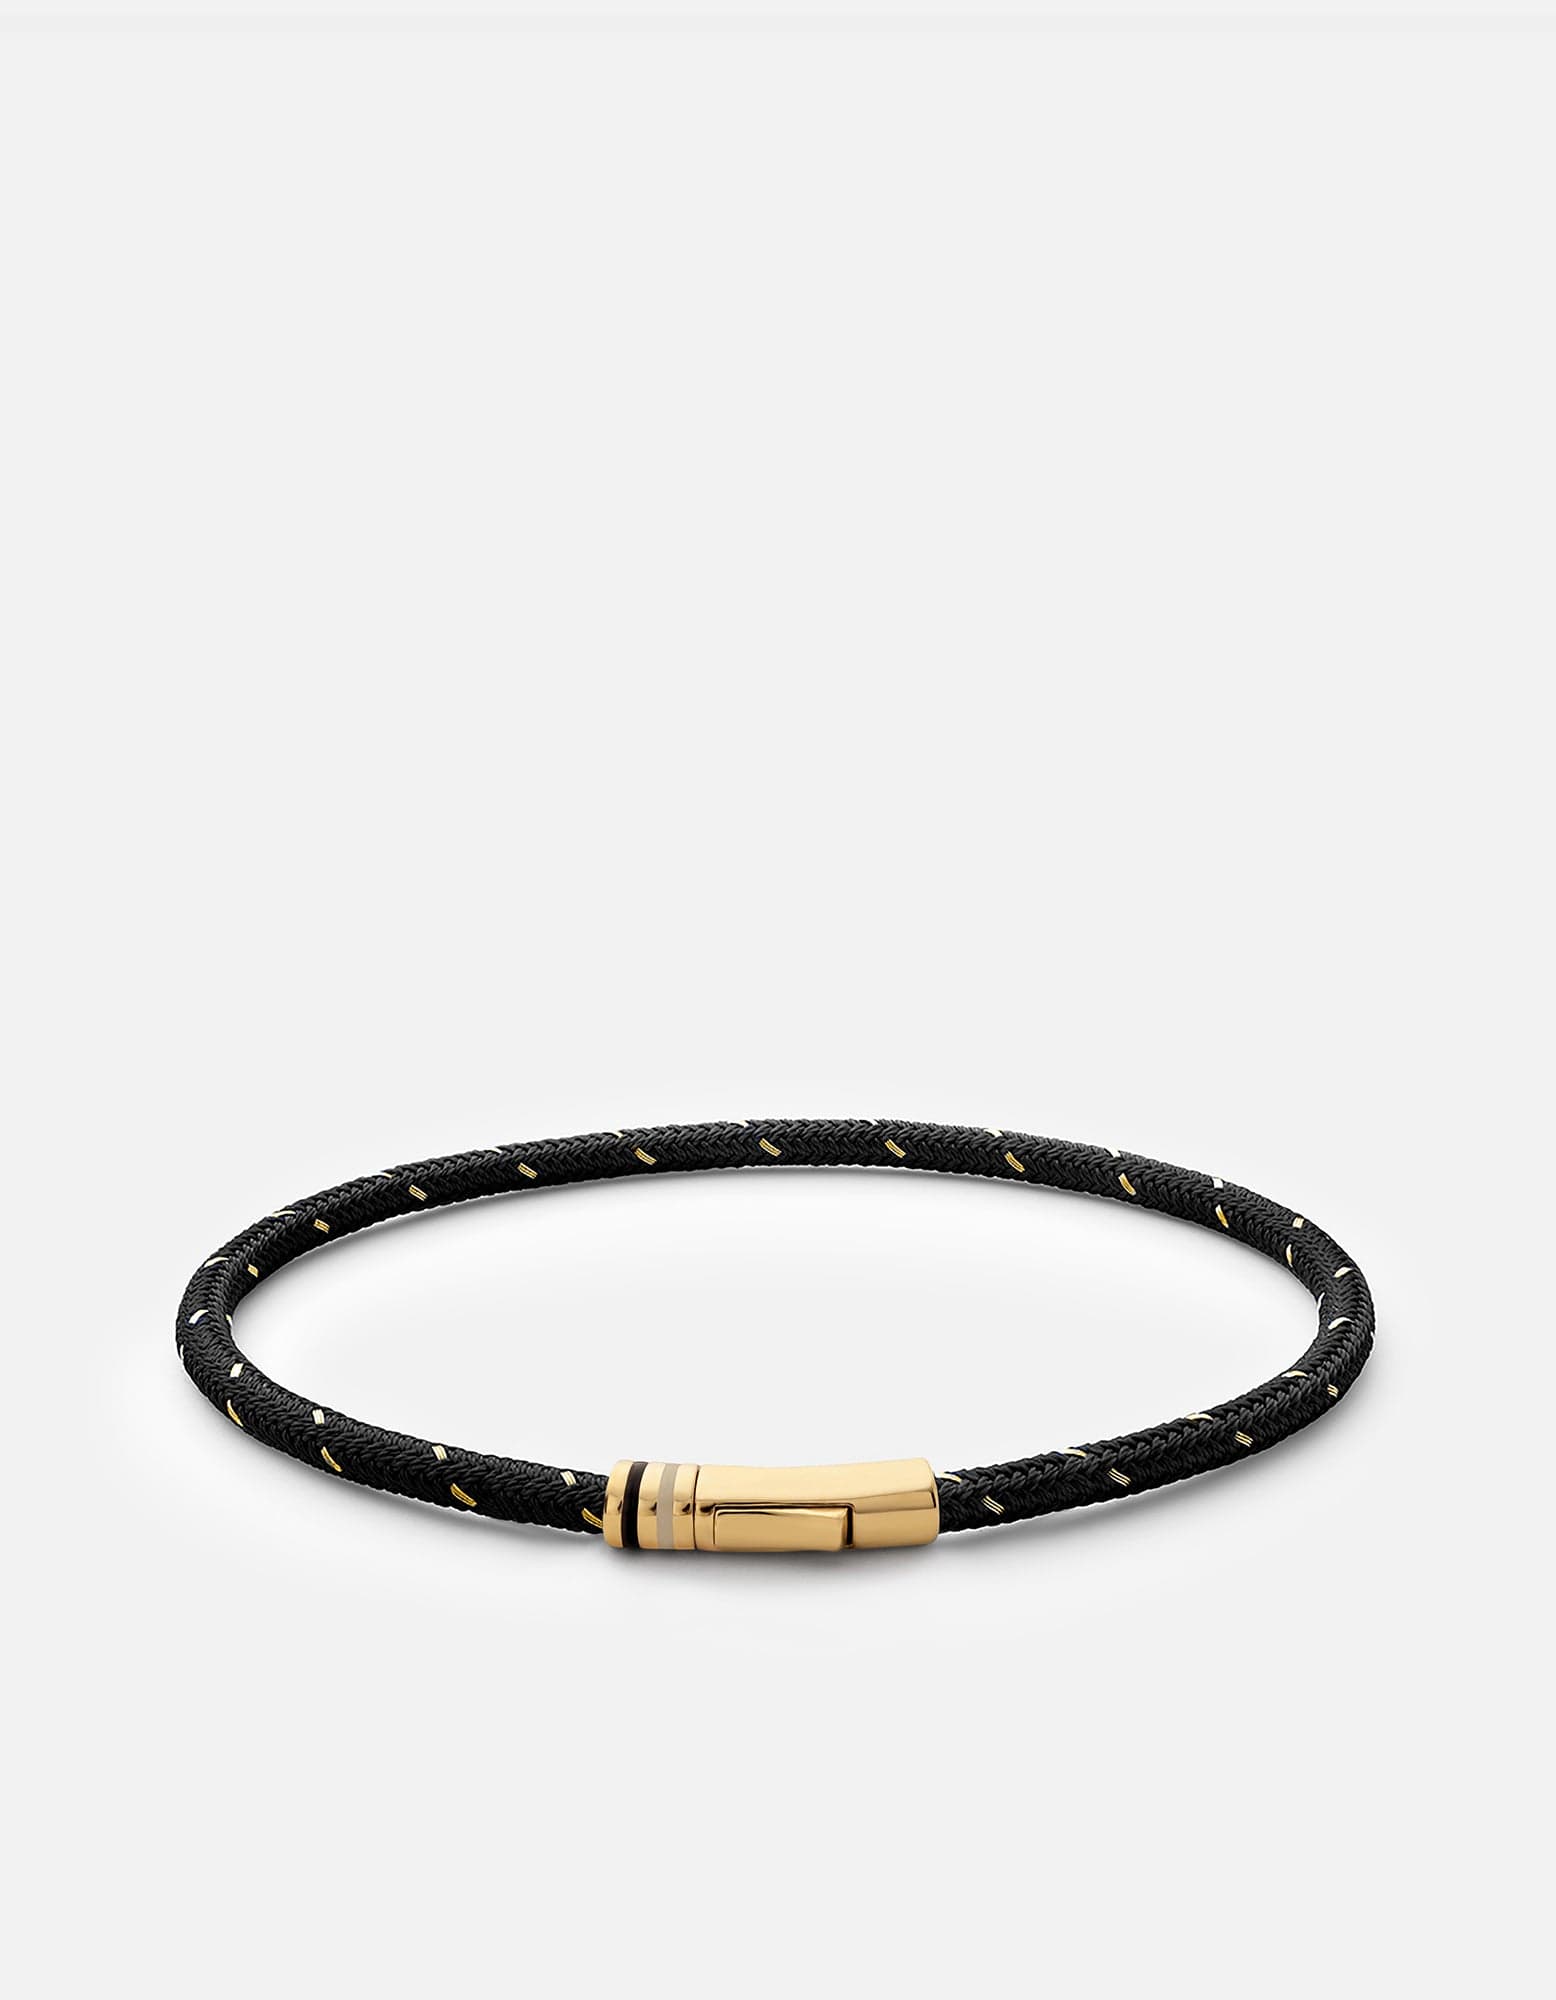 Authentic Louis Vuitton Gold Bracelet 20cm LV Circle Women Accessory From  Japan